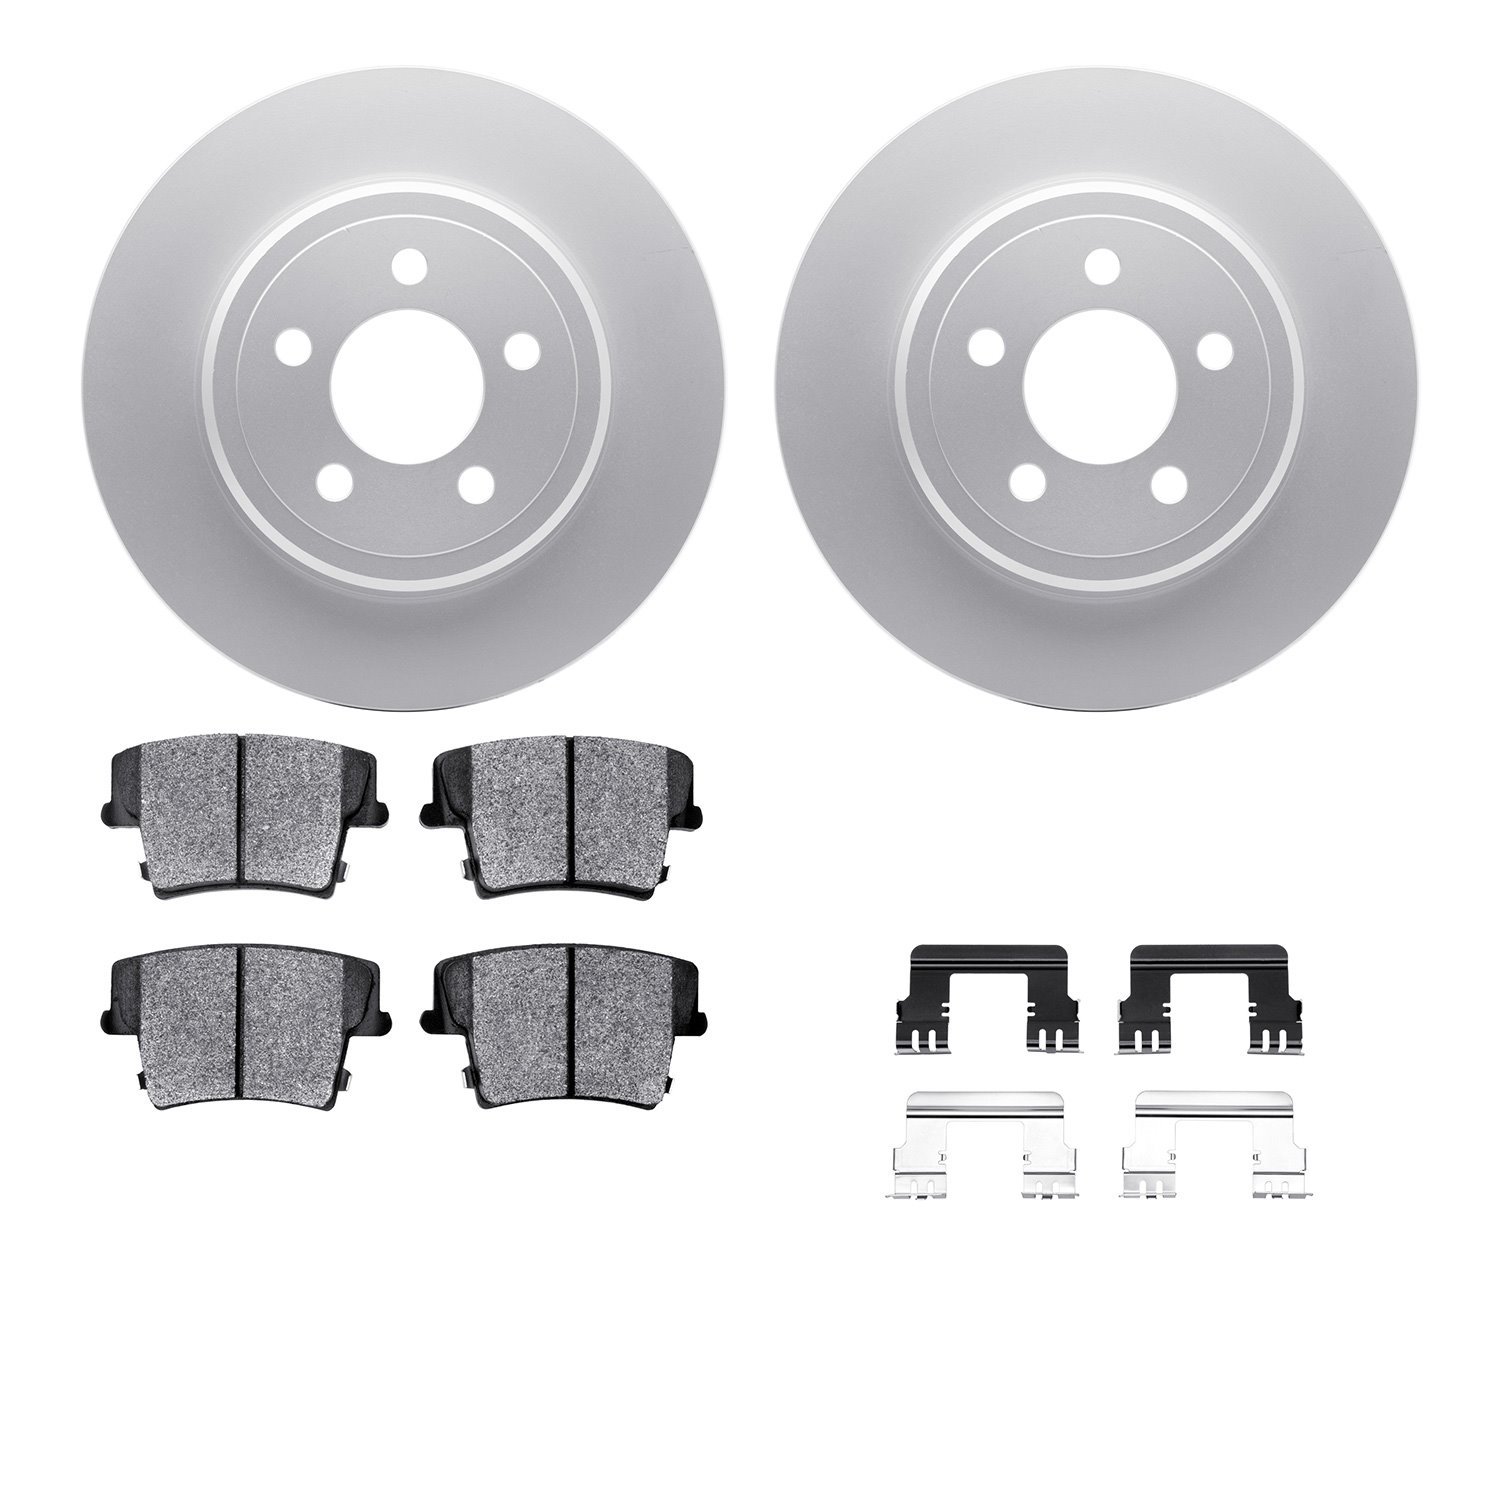 4212-39047 Geospec Brake Rotors w/Heavy-Duty Brake Pads & Hardware, Fits Select Mopar, Position: Rear